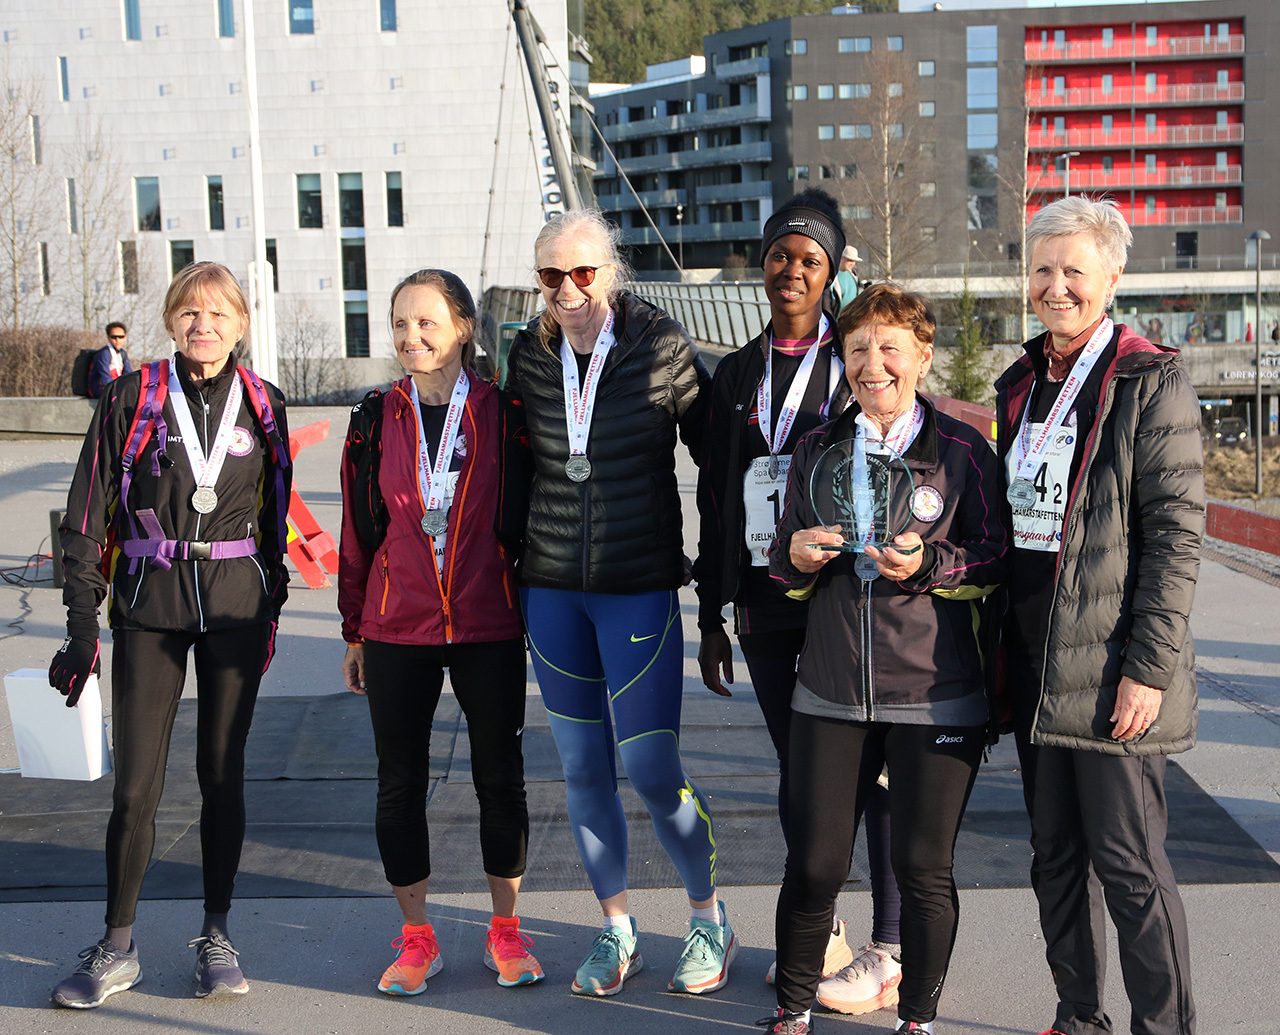 Romerike-Runners-veteranlag-kvinner.jpg